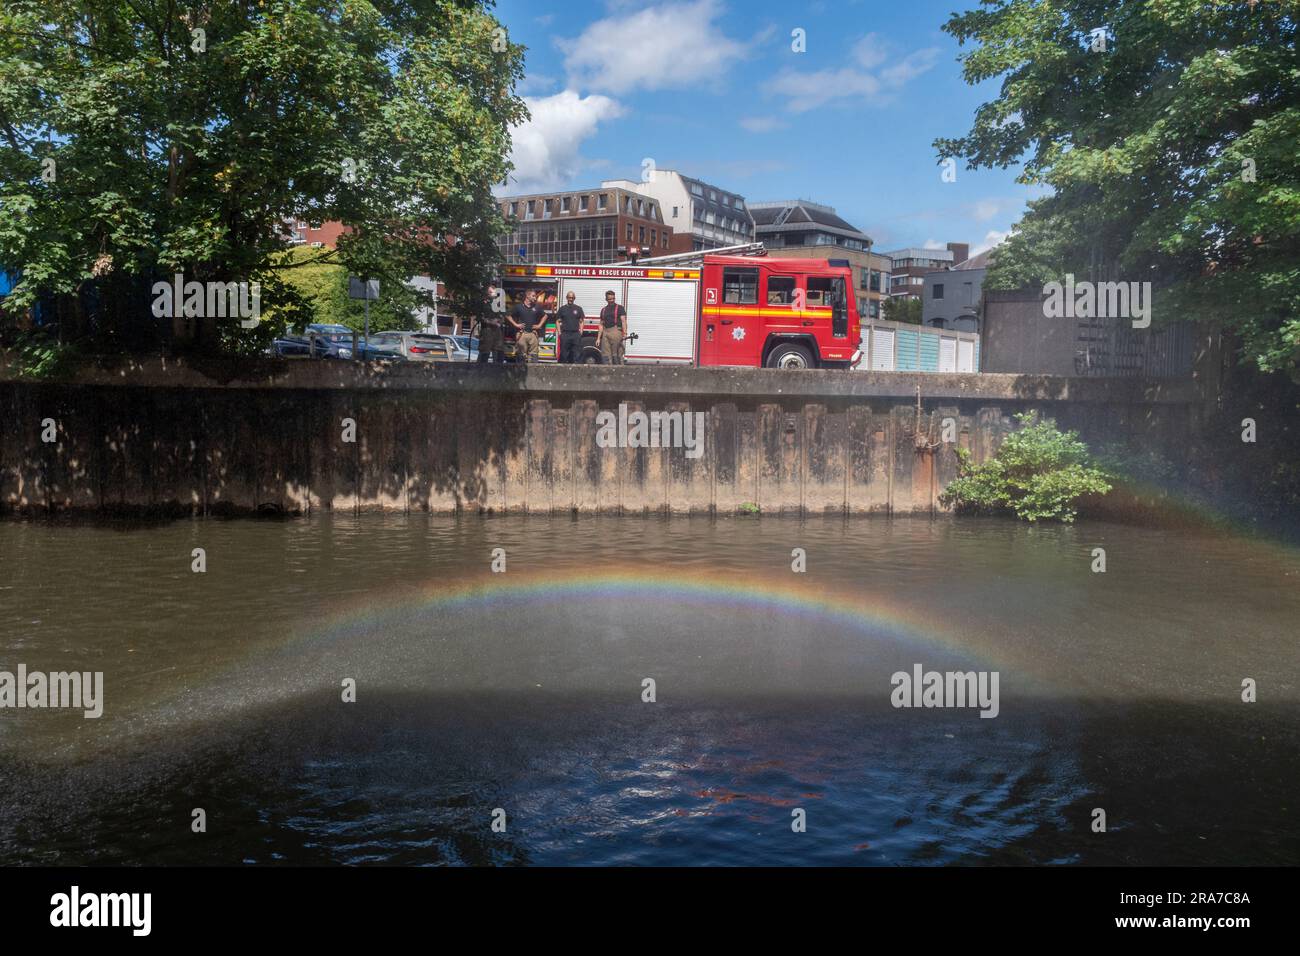 1 luglio 2023. L'annuale gara di zattera di Guildford sul fiume Wey, con una macchina antincendio del Surrey e un arcobaleno sul fiume, Inghilterra, Regno Unito Foto Stock